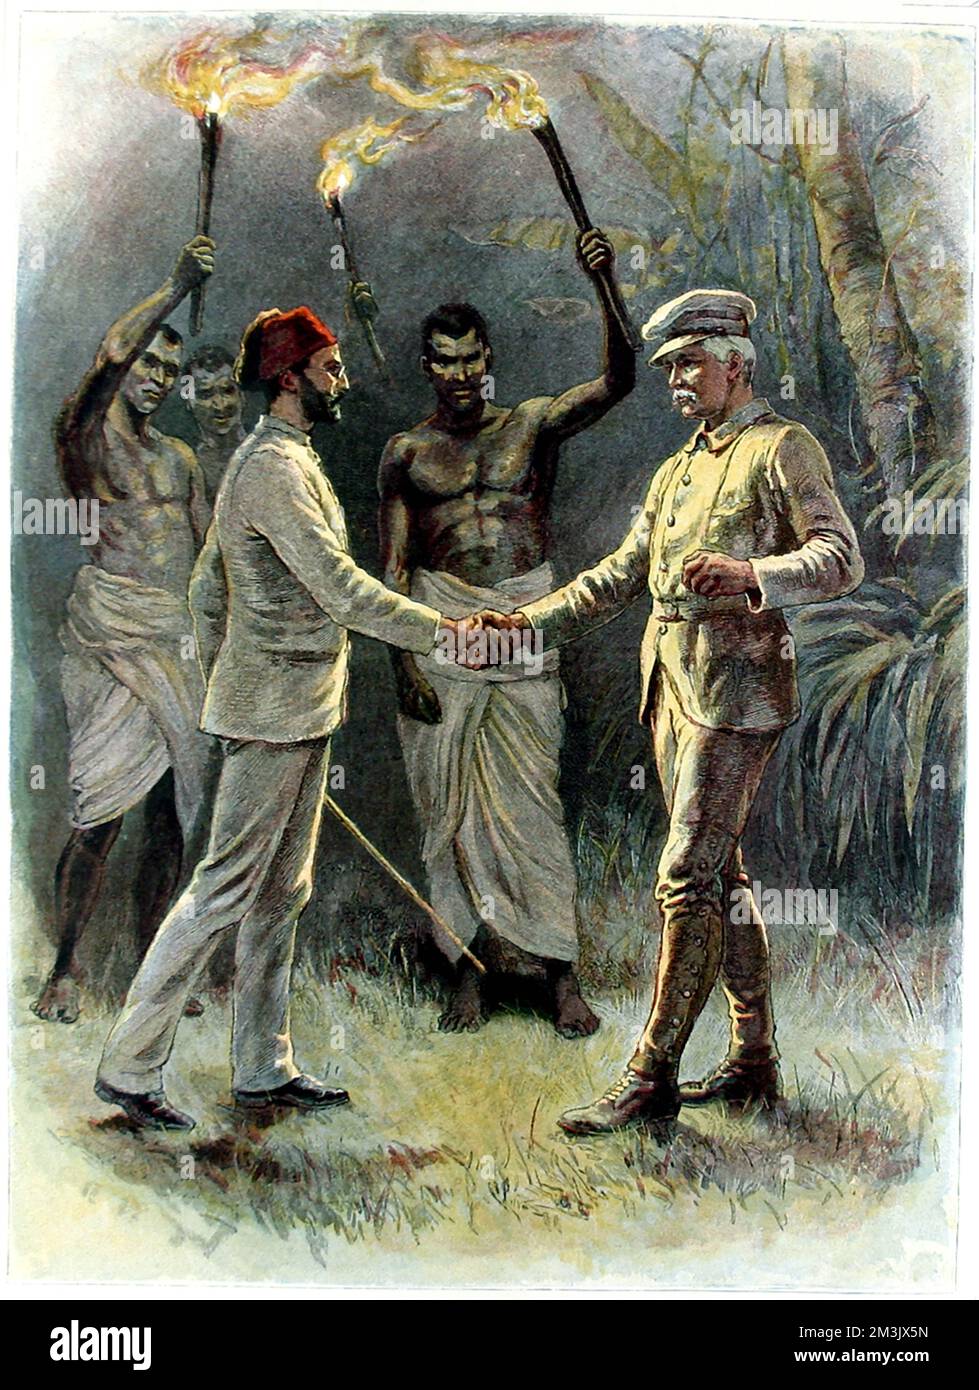 Emin Pasha (1840 - 1892) und Sir Henry Morton Stanley (1841 - 1904) in Kavalli, Zentralafrika, April 1888. Emin Pasha, deutscher Arzt, Entdecker, Linguist und Gouverneur der ägyptischen Äquatorialprovinz, zog sich mit 10.000 Anhängern während des Mahdi-Aufstiegs nach Wadelai in der Nähe des Albert-Sees zurück. Emin Pasha wurde als verloren betrachtet, also schickte die britische Regierung eine Rettungstruppe unter Stanley. Dieses Bild zeigt die Szene, in der sich die beiden Männer zum ersten Mal treffen. Stockfoto